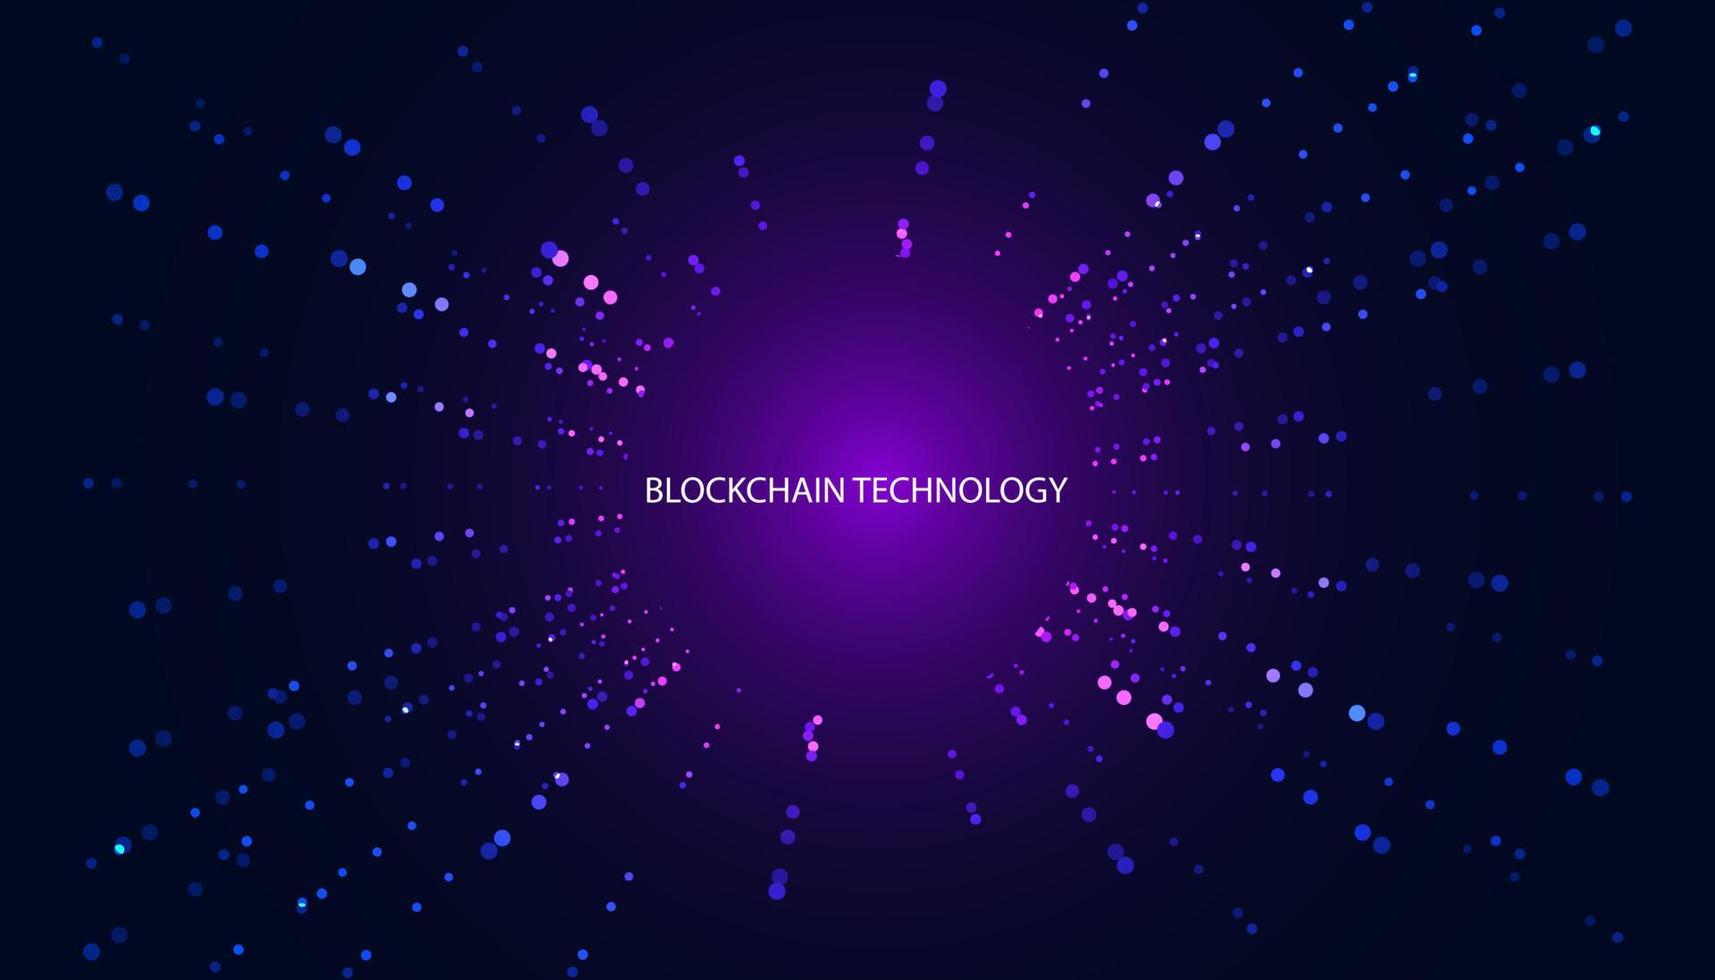 tecnologia digital blockchain abstrata azul moderno sobre fundo azul fundo roxo bonito do espaço da cópia vetor